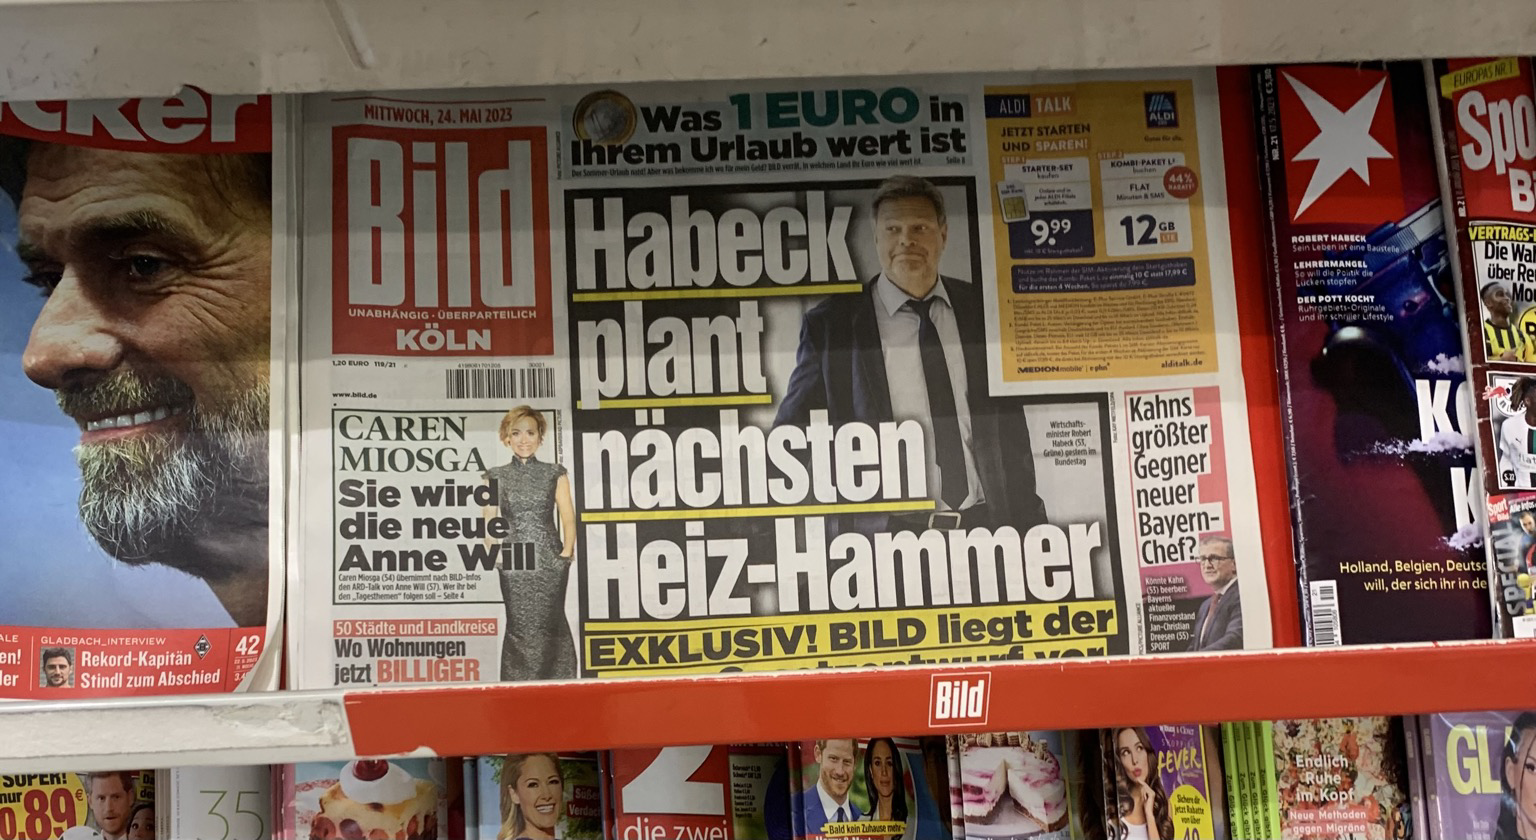 Bild Schlagzeile: Habeck plant nächsten Heiz-Hammer